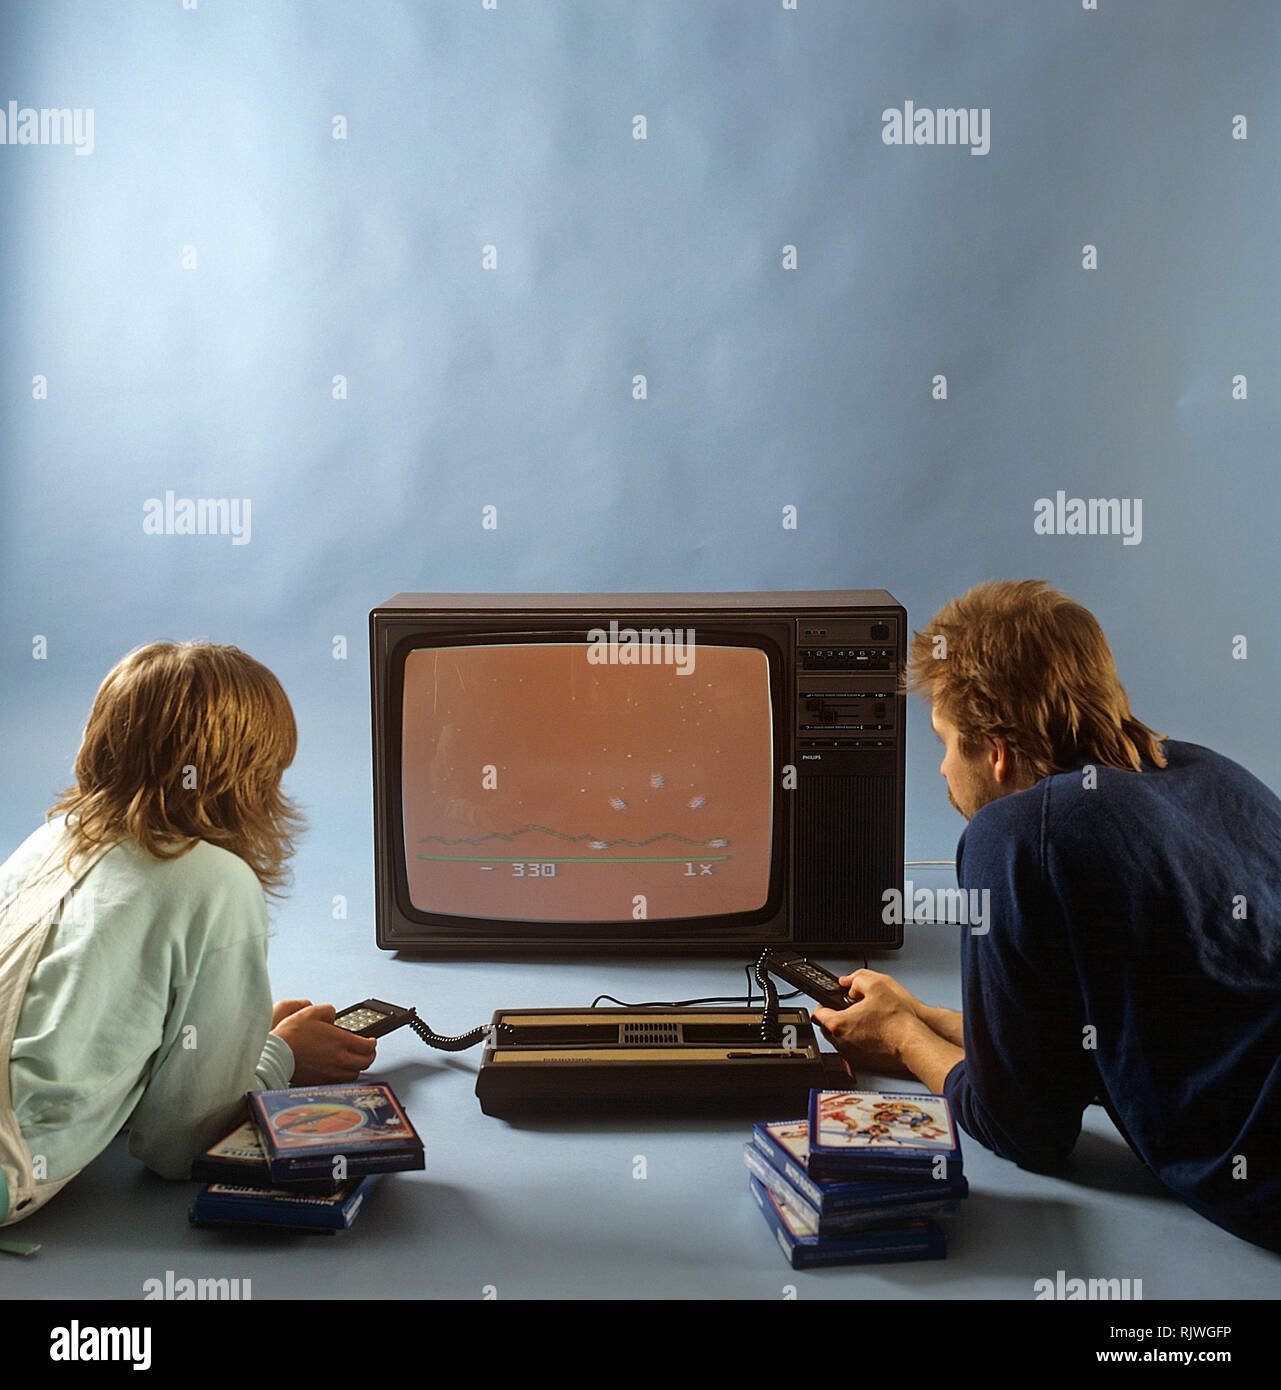 Home video Spiele in den 1980er Jahren. Ein Home Video Game Console von Intellivison Mattel Electronics 1979 veröffentlicht. Bild zwei Leute ein Spiel auf einem Fernseher. ref BV 97-5 Stockfoto